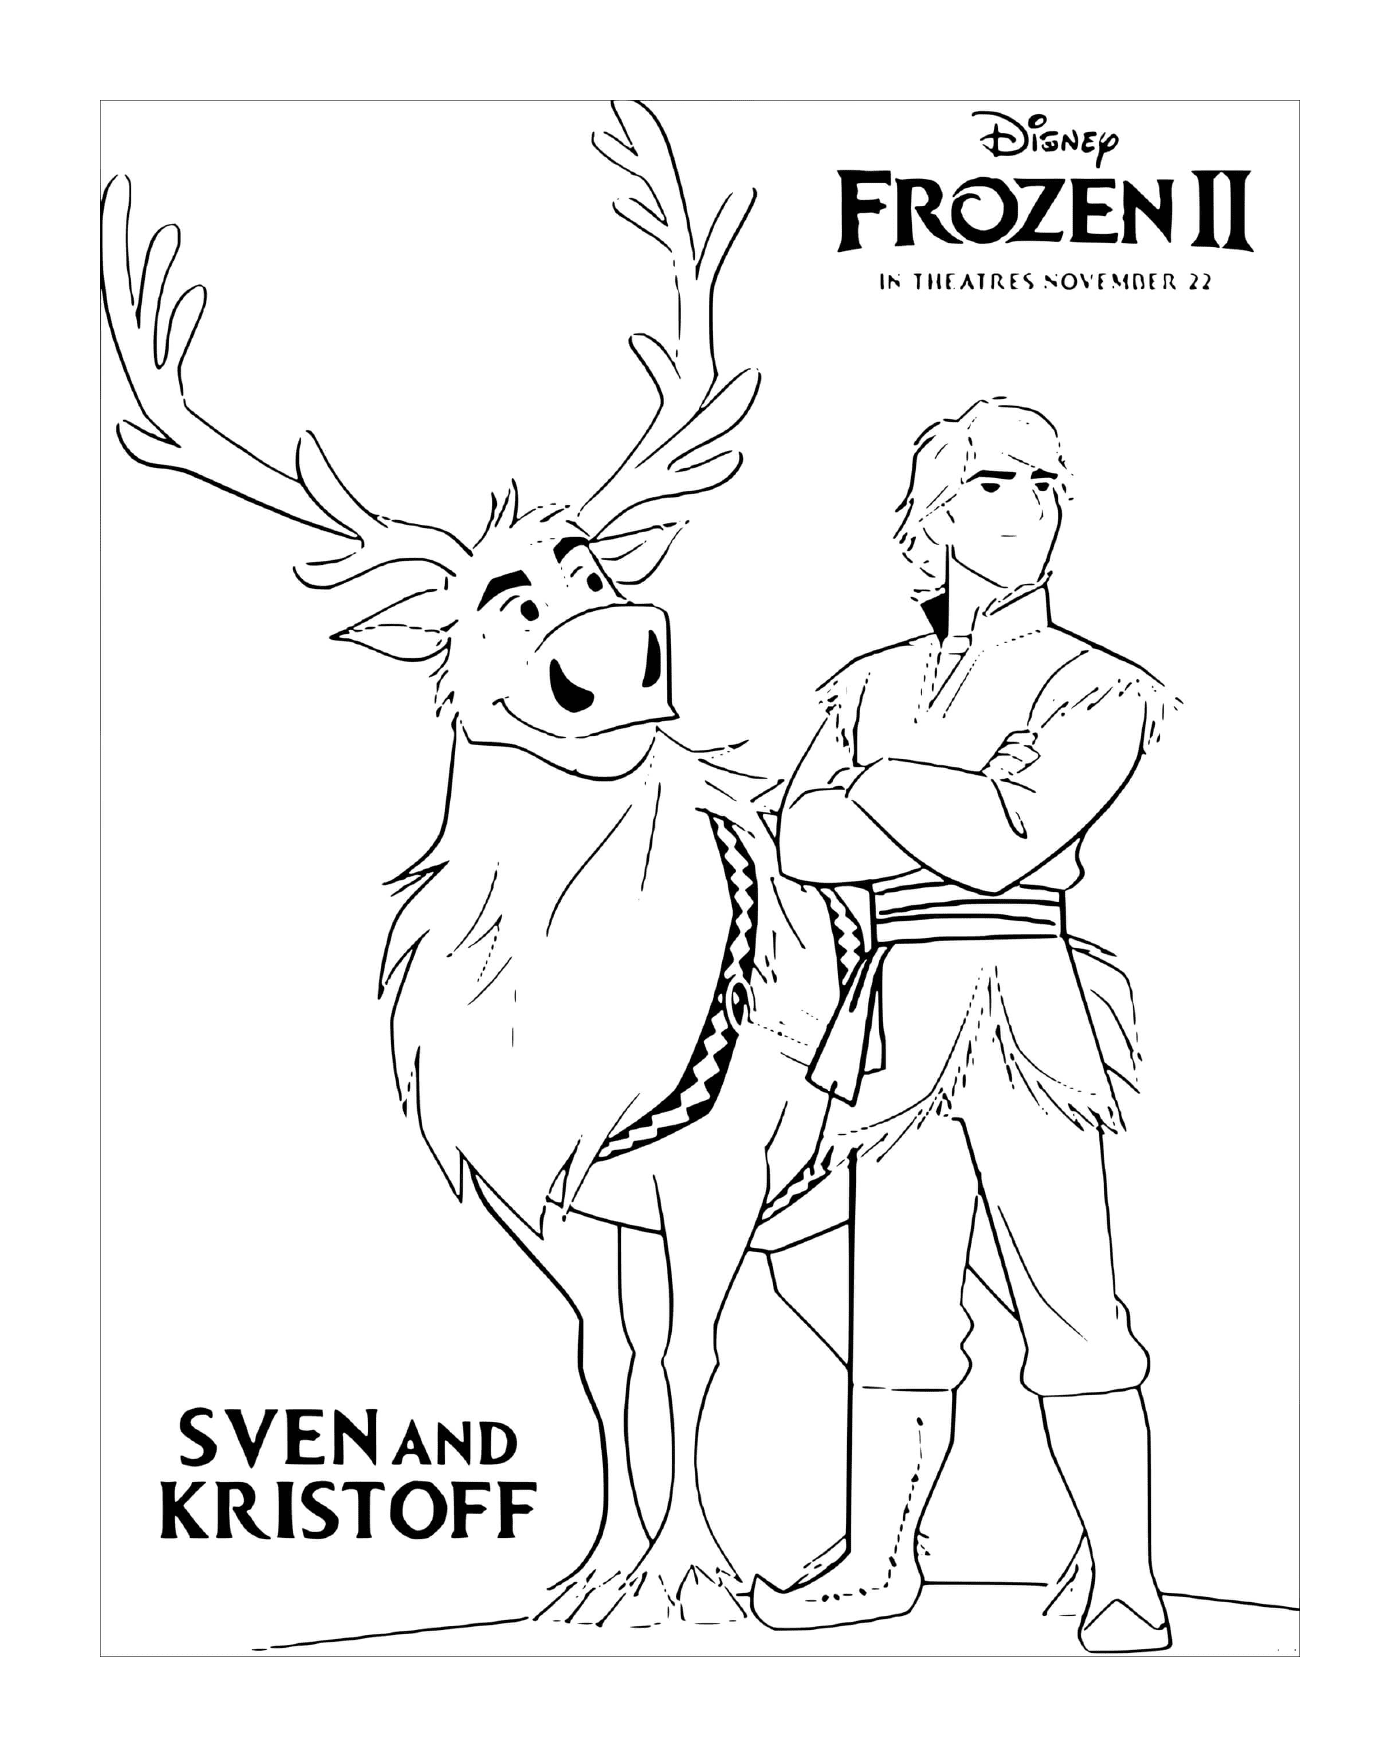  Sven und Kristoff suchen Elsa 